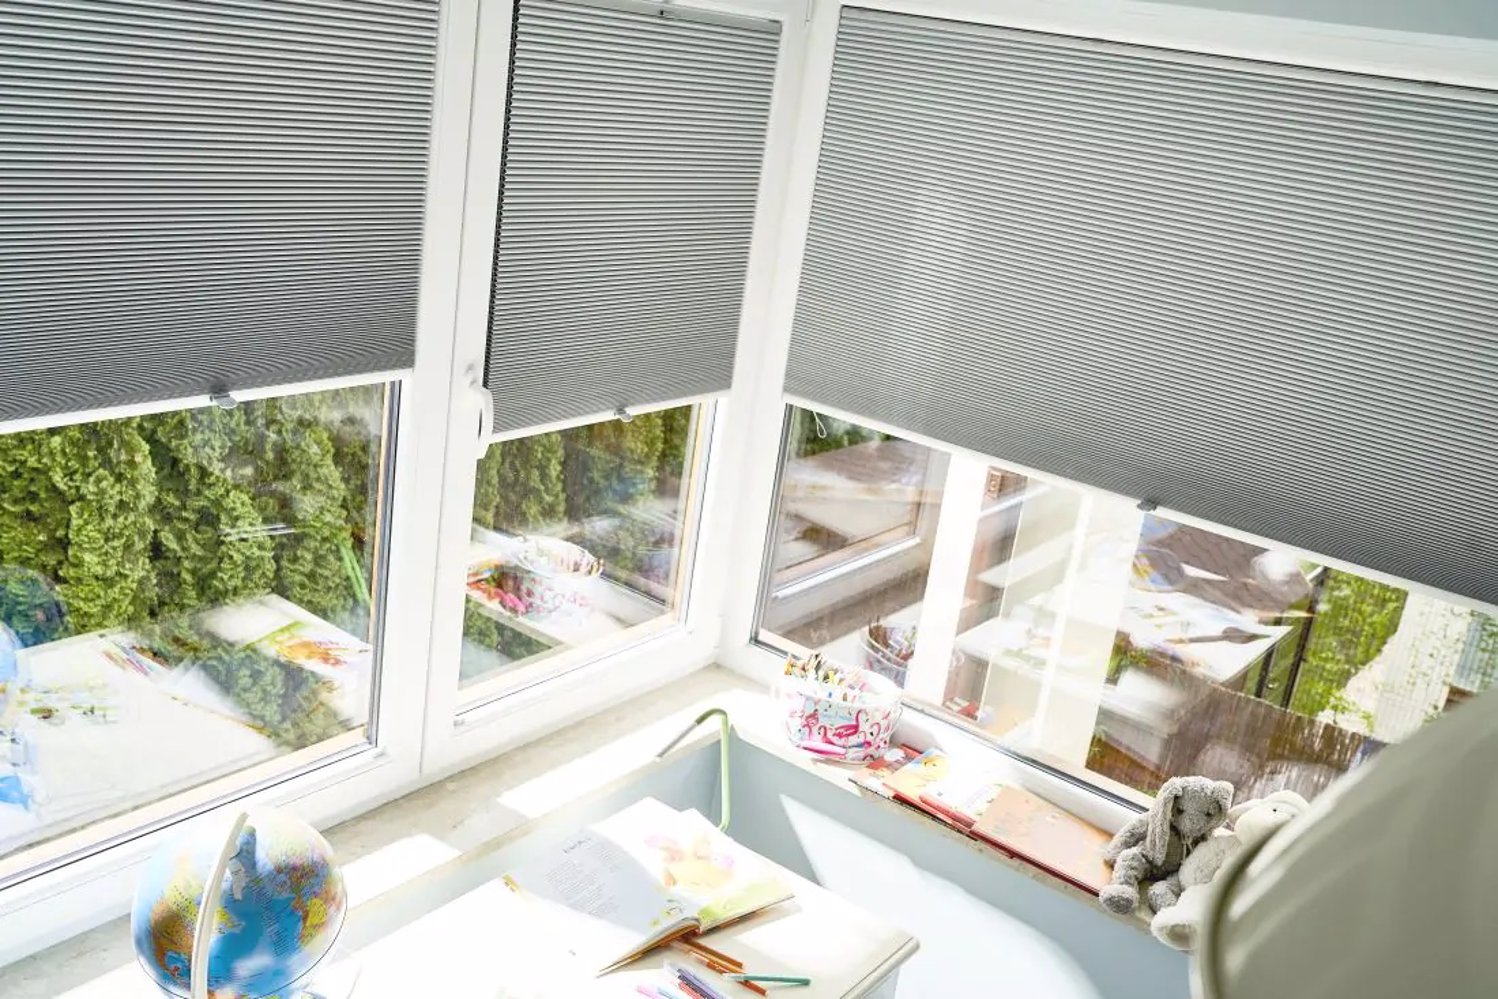 Duża rodzina i jej potrzeby – do aranżacji okien wykorzystaj rolety plisowane